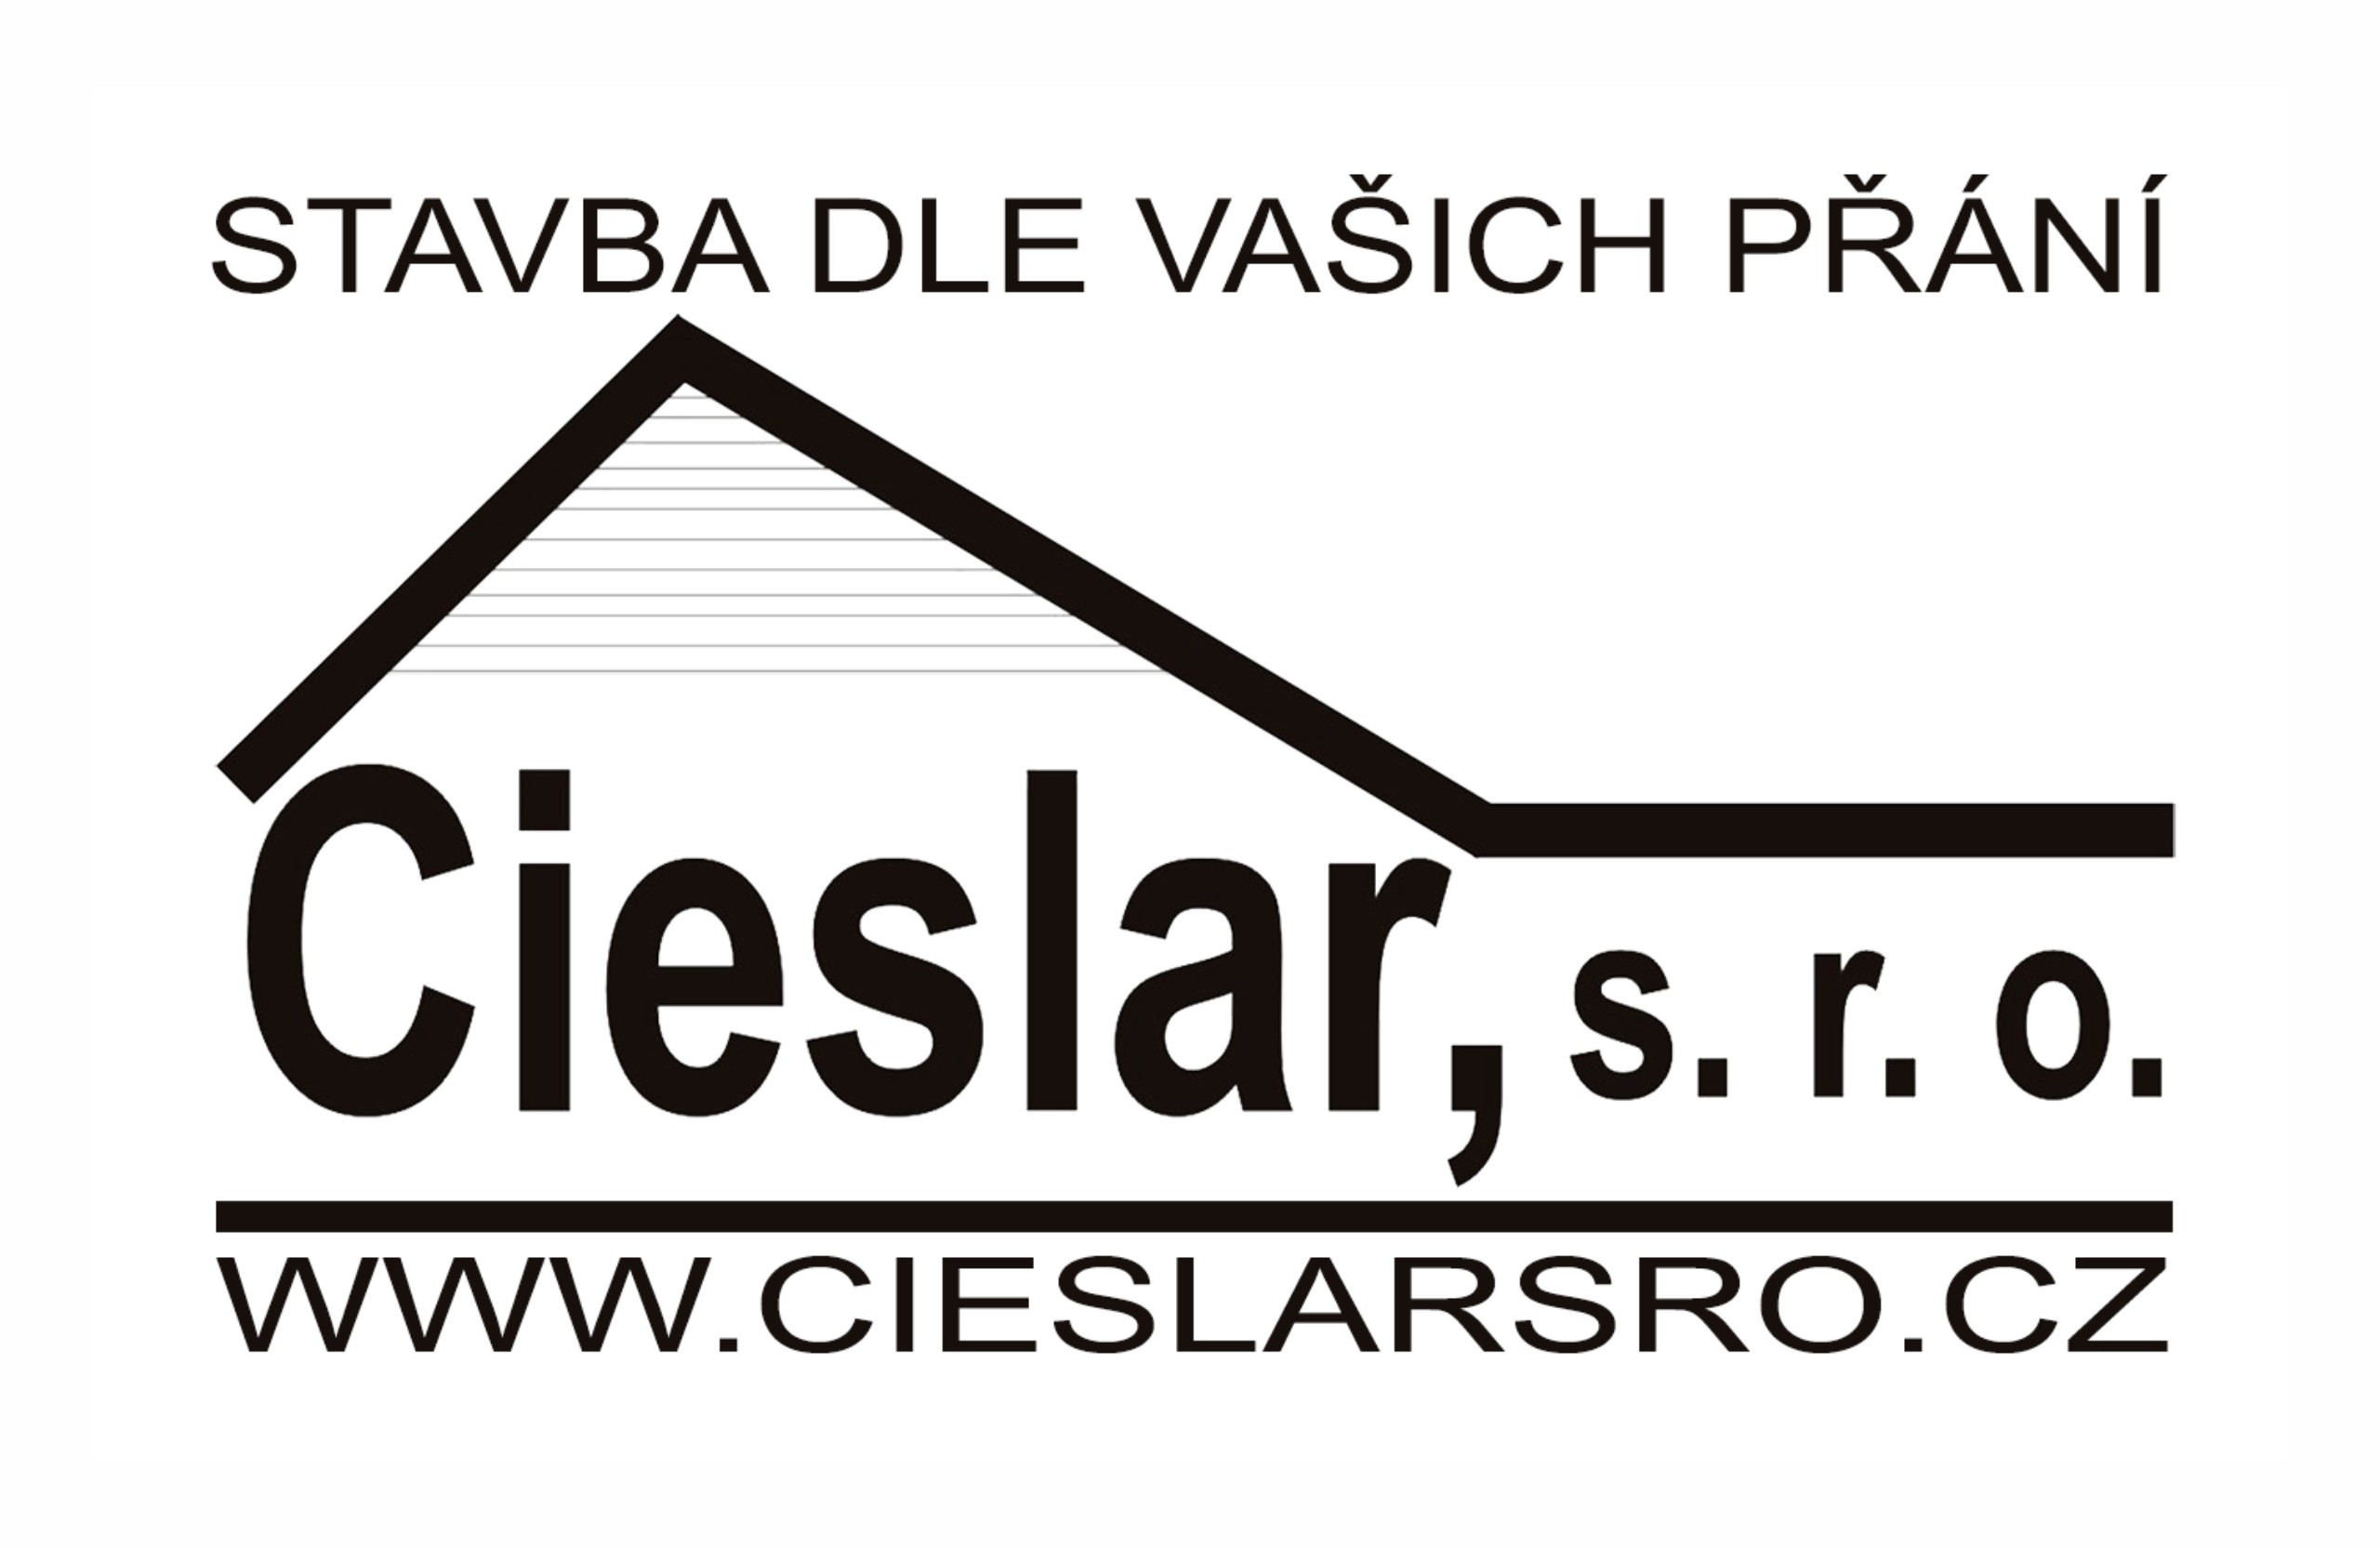 Cieslar, s.r.o.